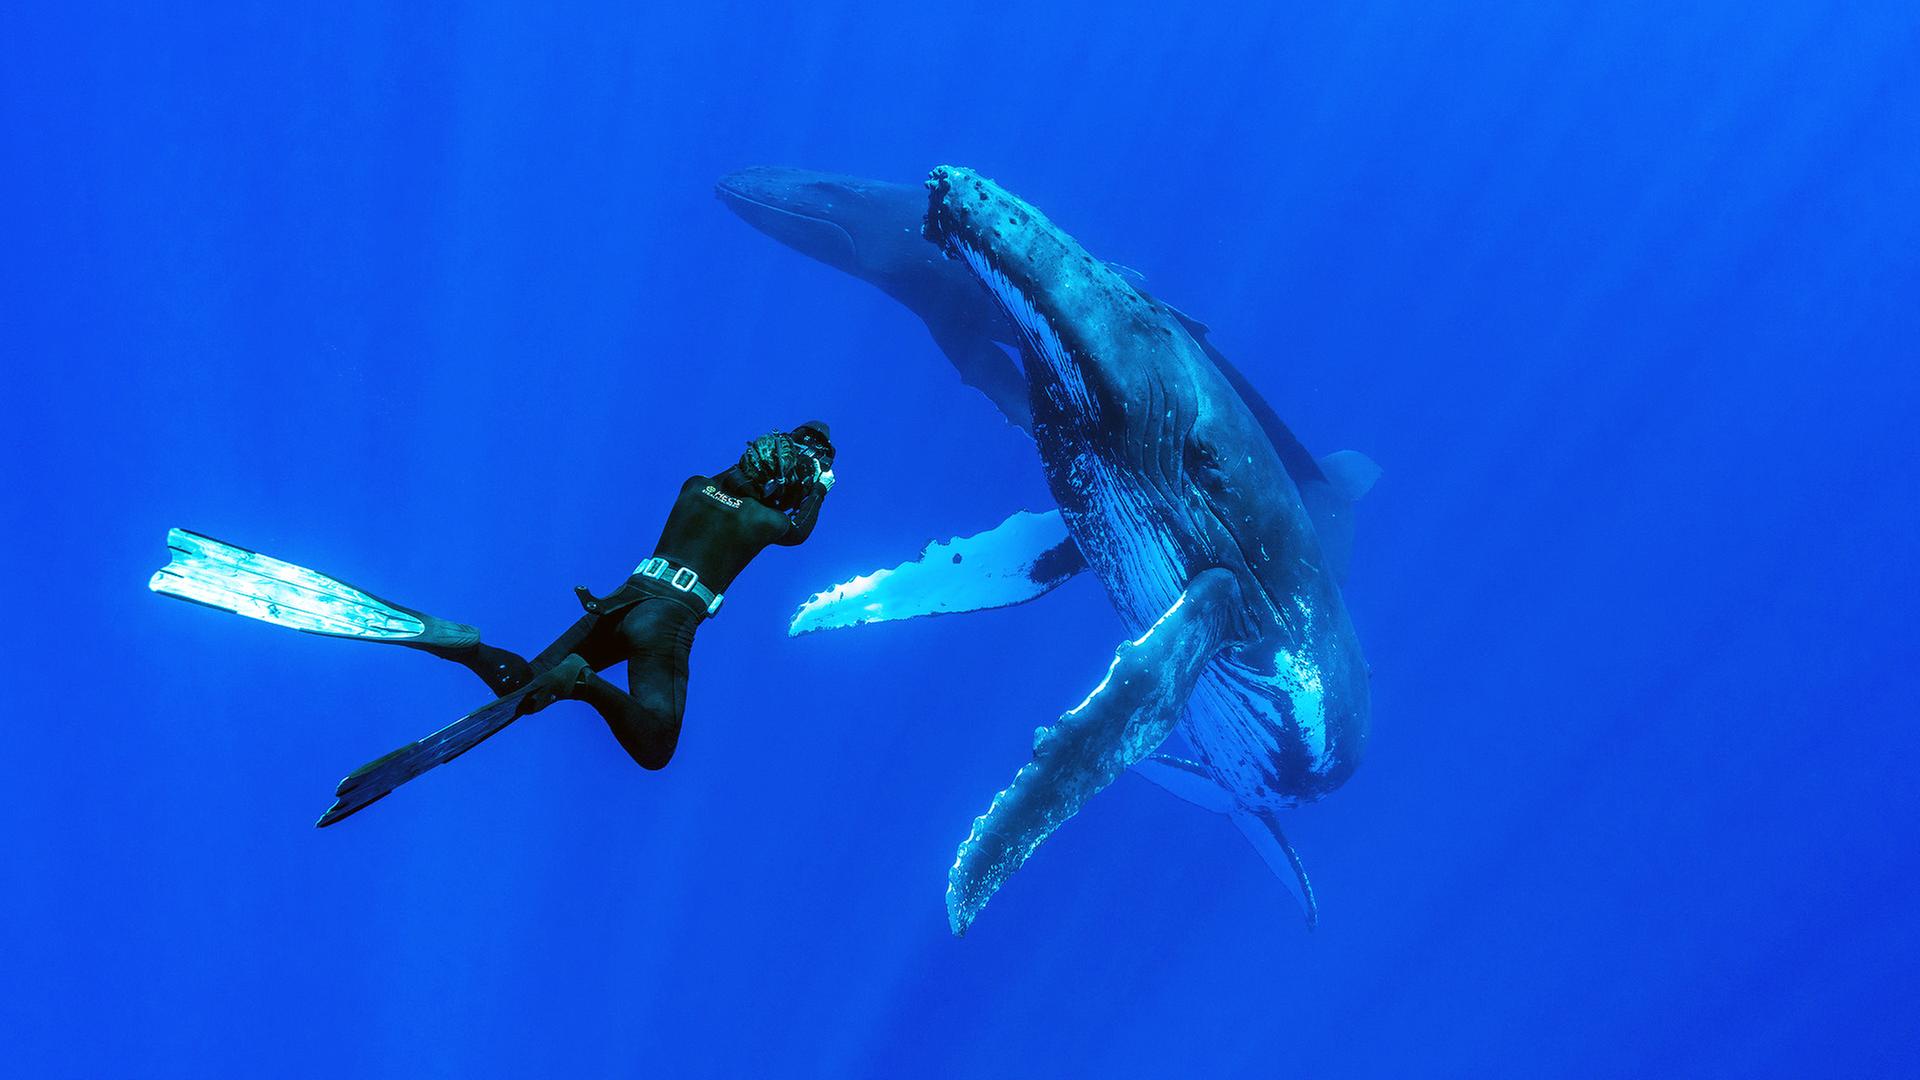 Mittig im Bild ein Tauscher mit Schwimmflosse und einer Kamera in der Hand. Er fotografiert einen Buckelwal im tiefblauen Wasser.